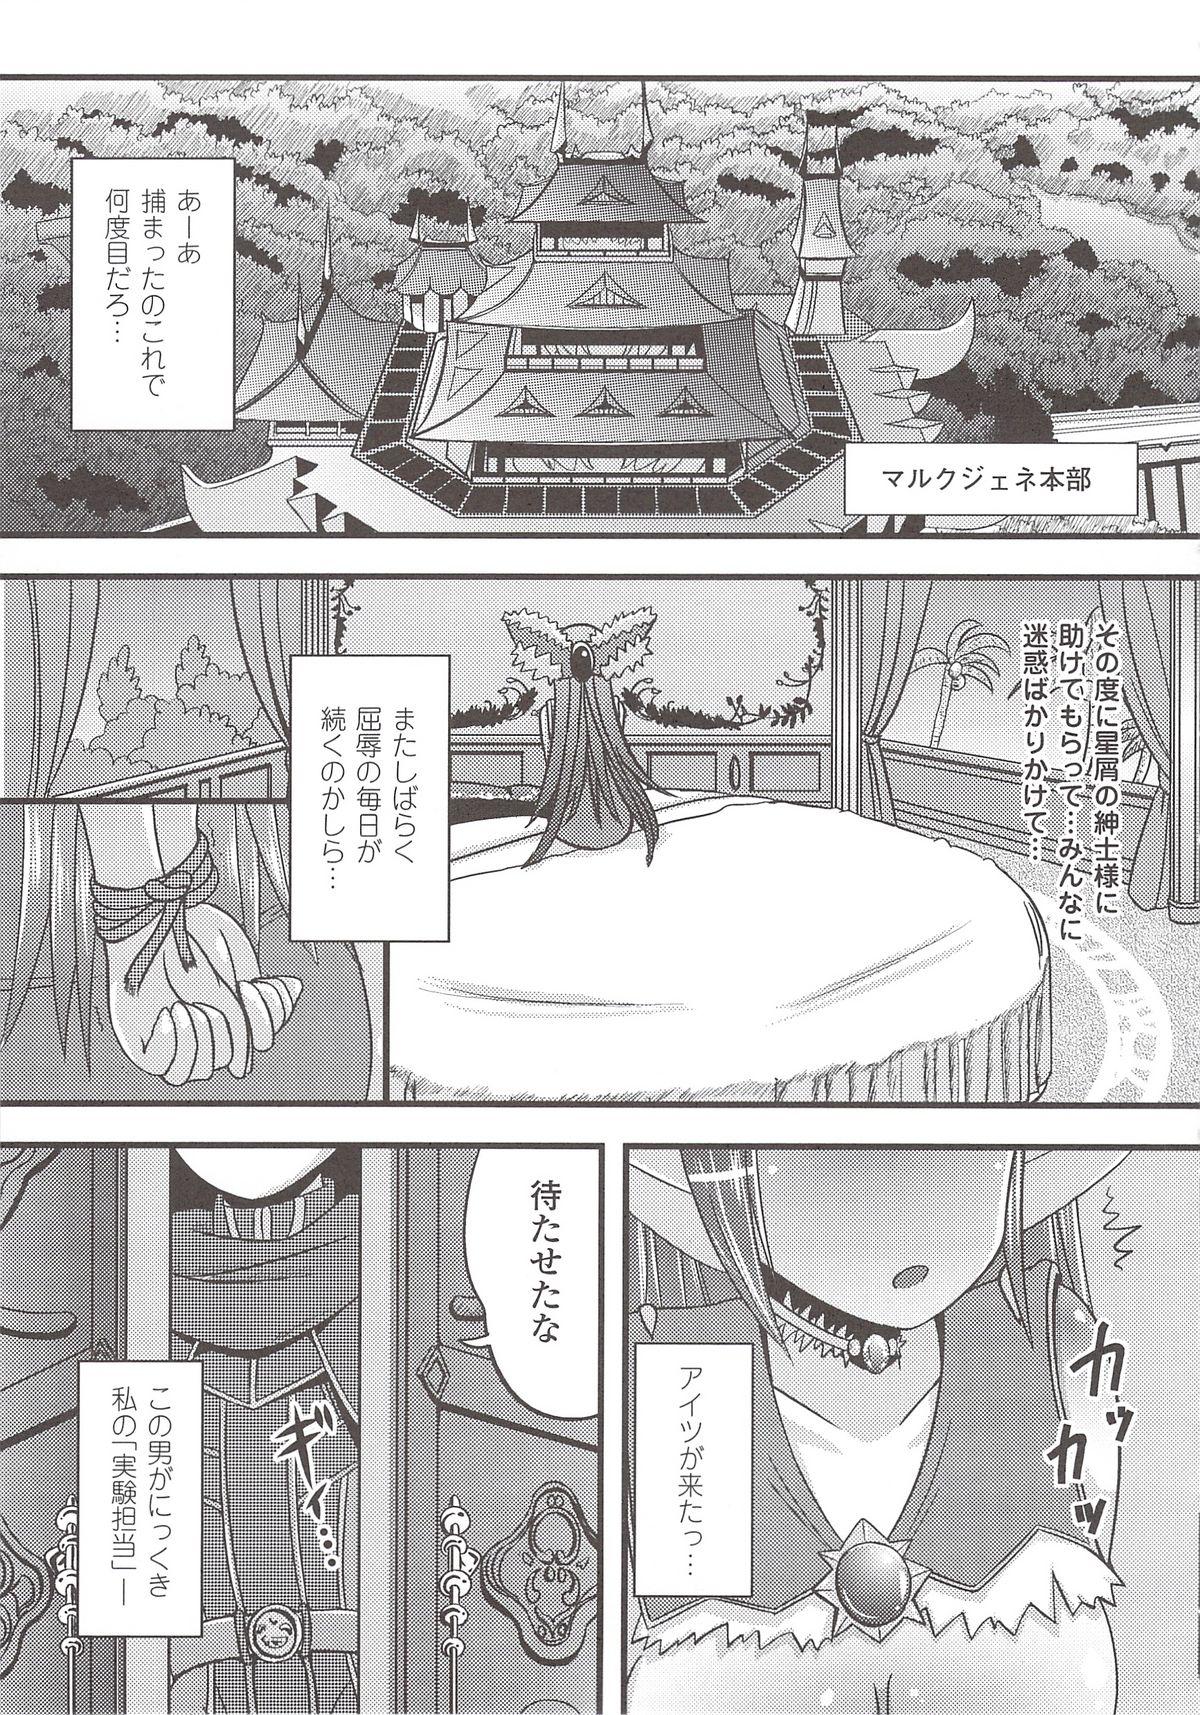 Suisei Tenshi Prima Veil Zwei Anthology Comic 120